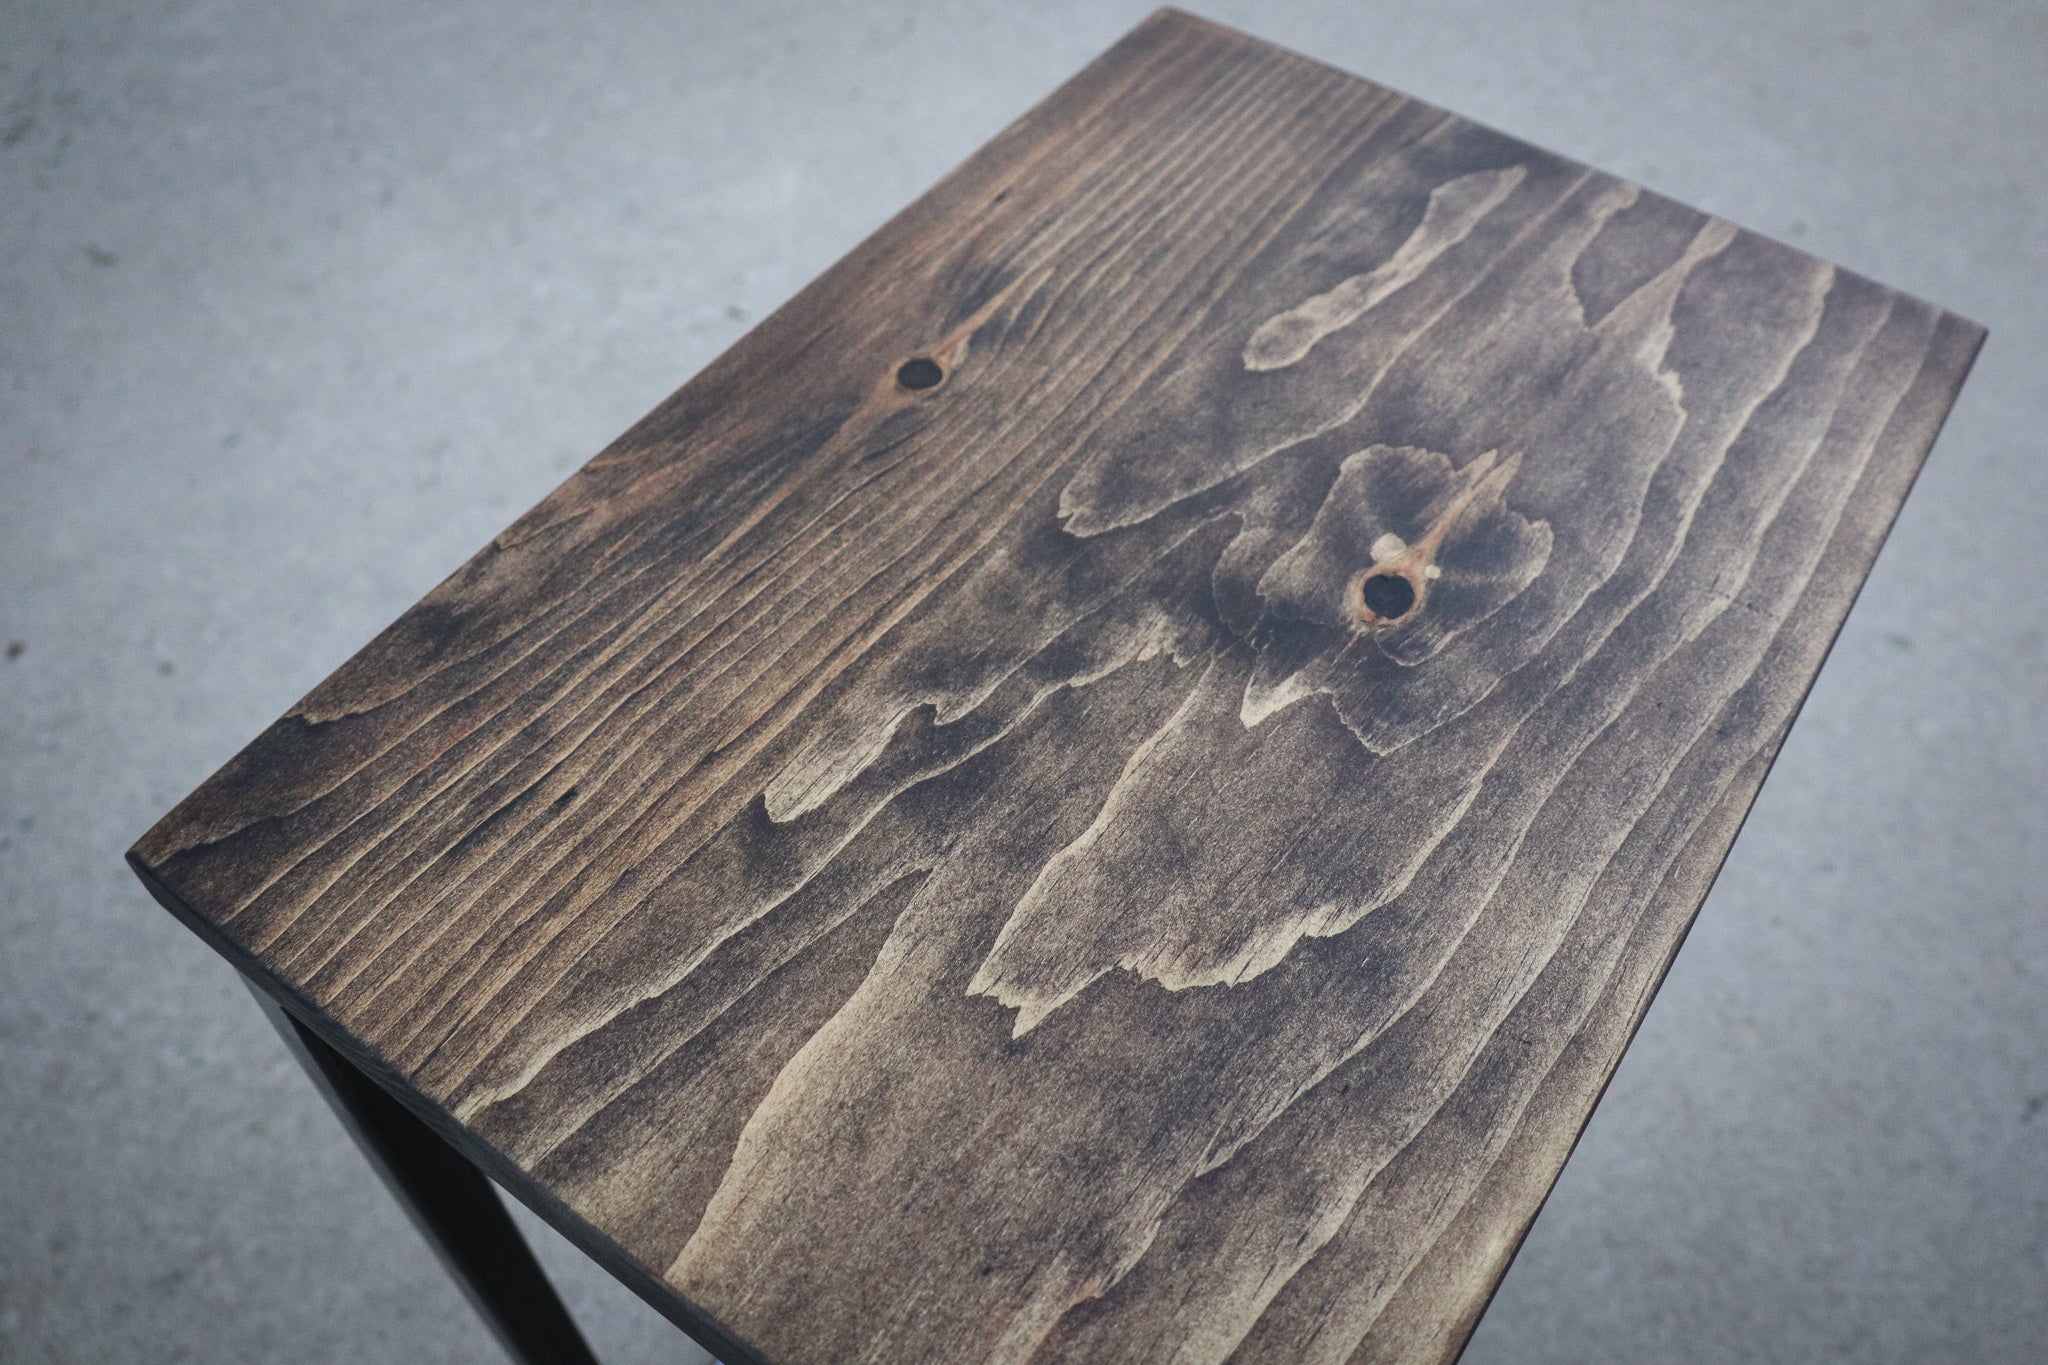 Pine Wood &amp; Metal Industrial Side C Table